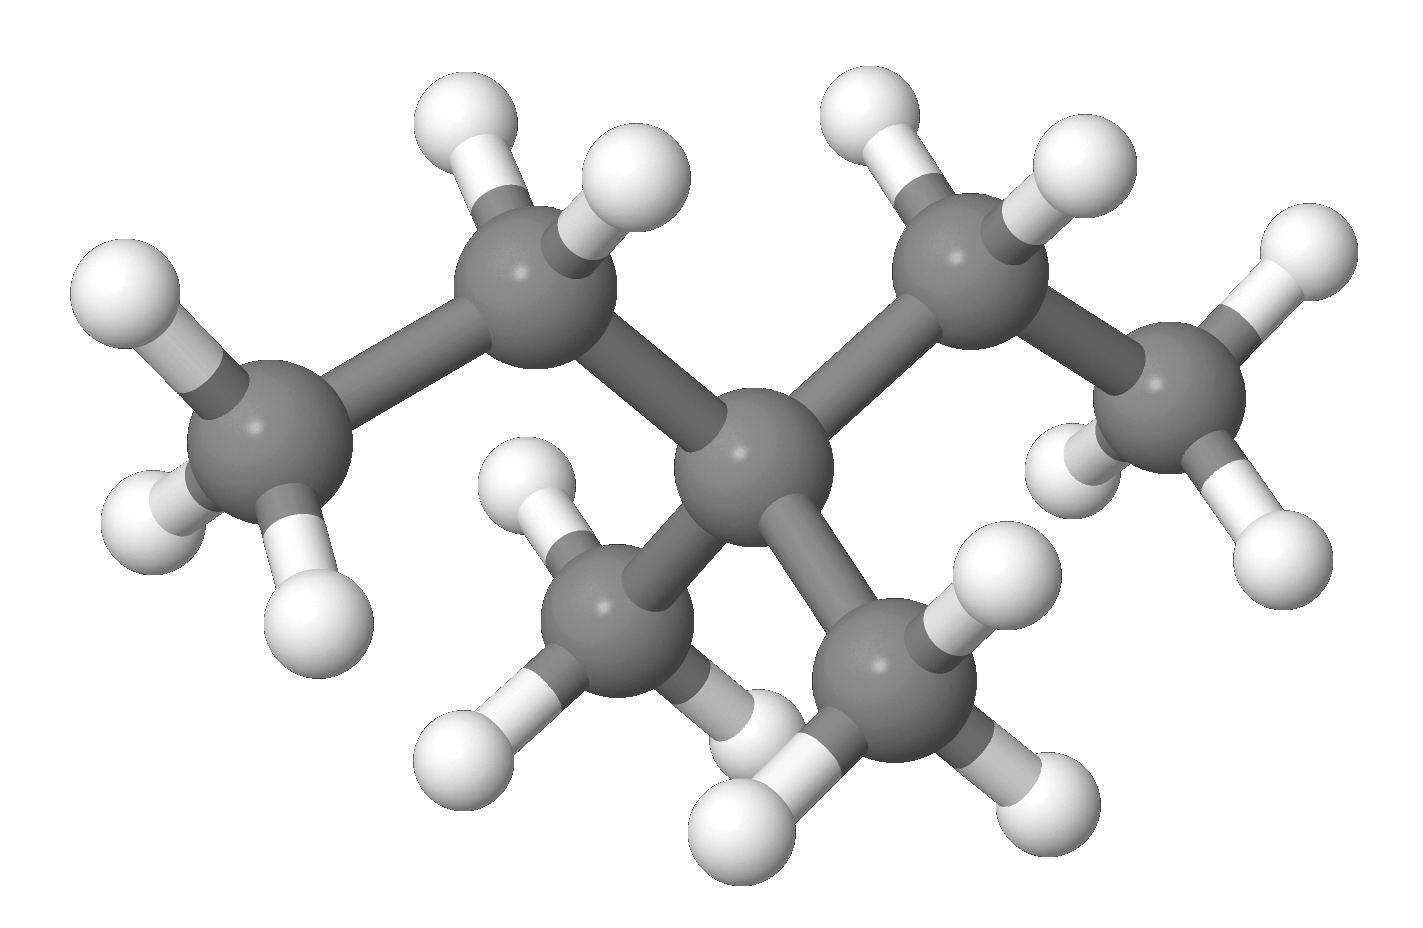 3 3 диметилпентан алкан. 3 3 Диметилпентан. C₂h₆o, h₃с-о-сн₃ модель молекулы. 3,3-Diethylpentane. Число концевых групп в молекуле 3,3 диметилпентан.